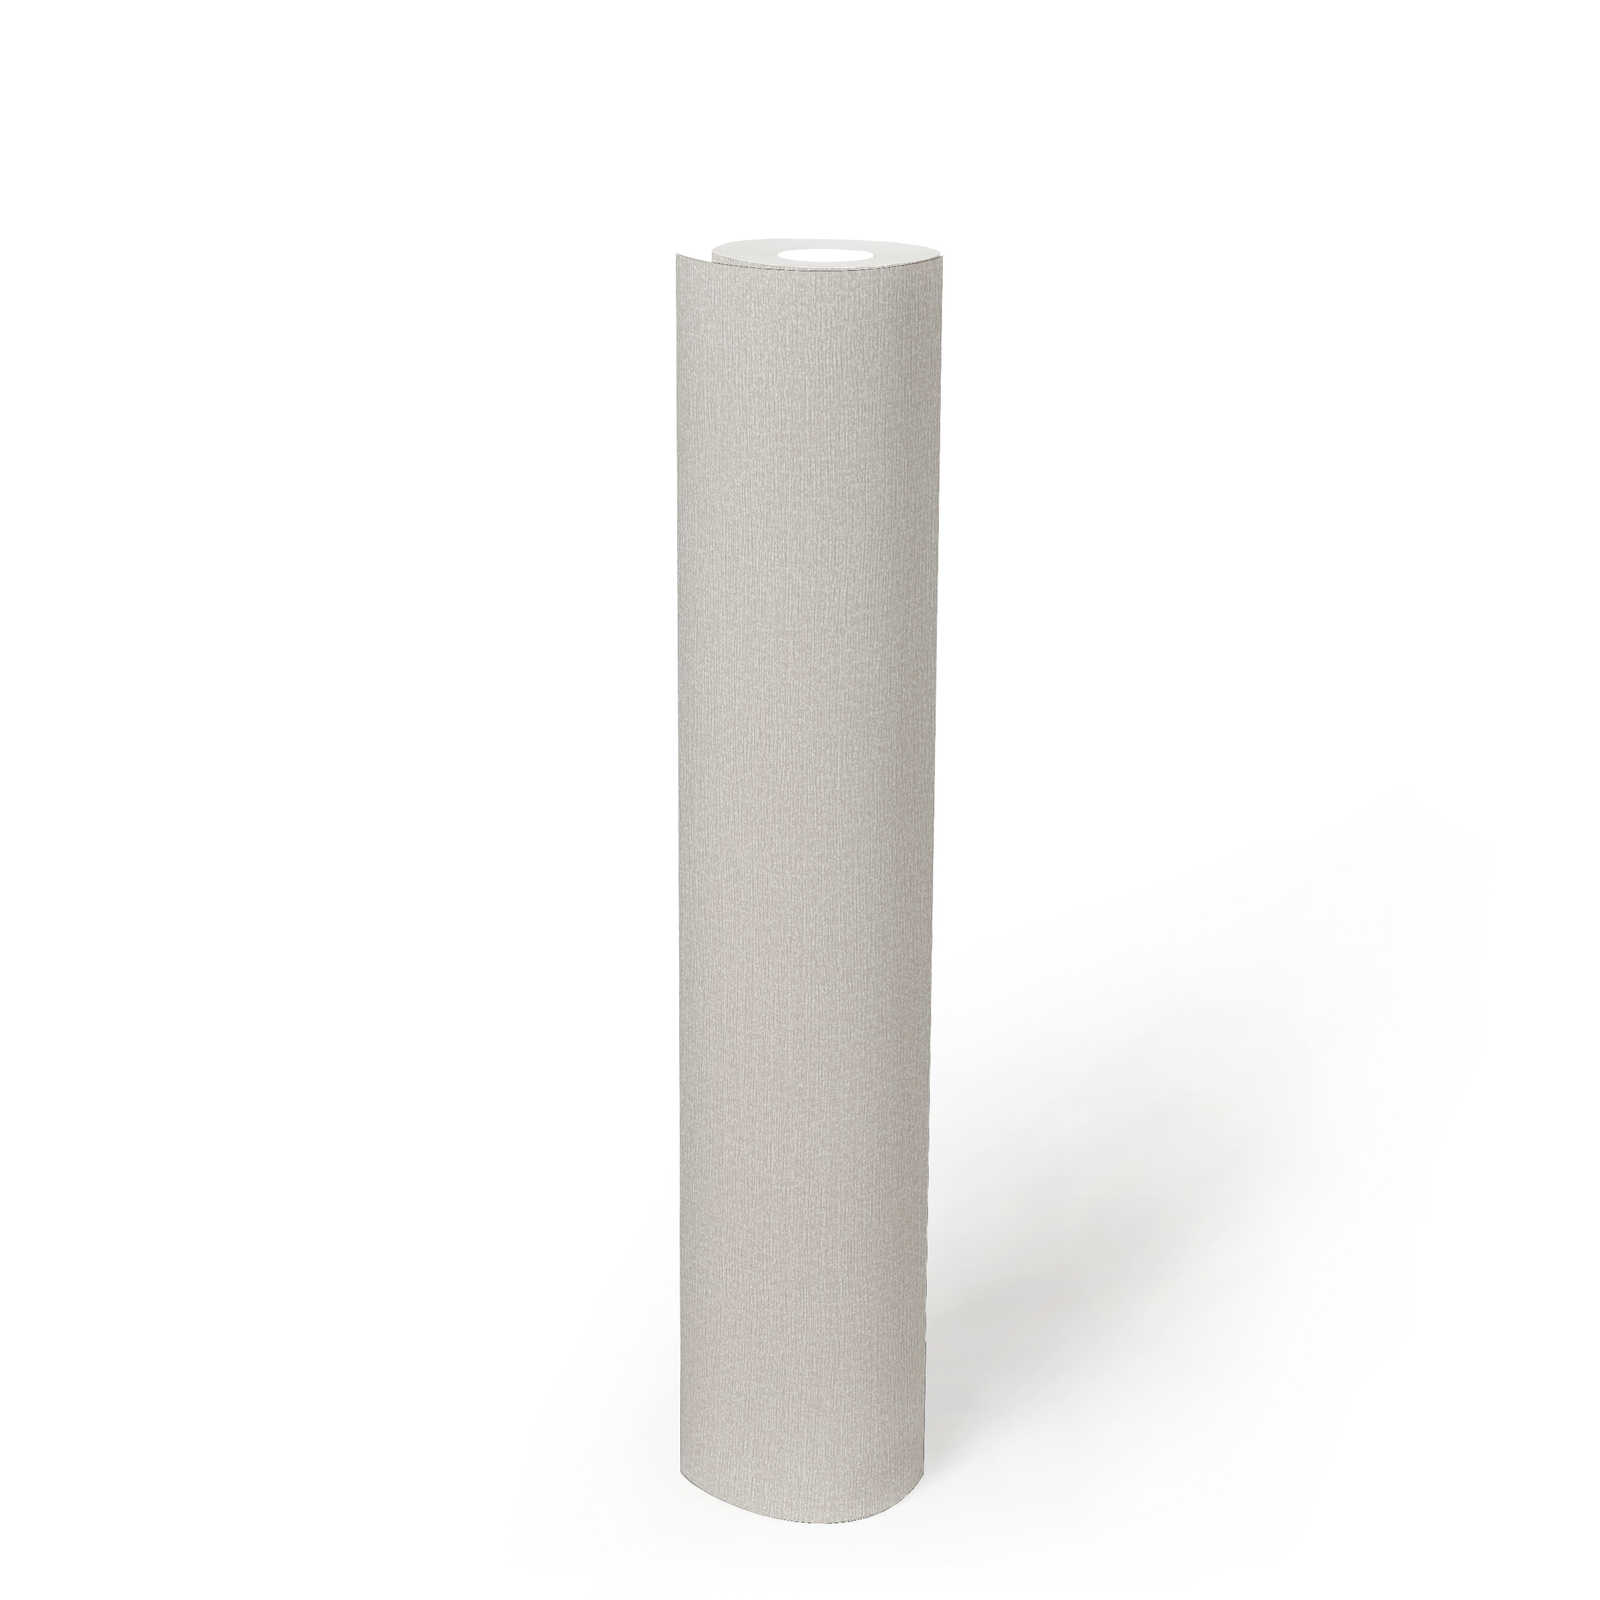             PVC-vrij glansbehang met gevlekt patroon - grijs, wit
        